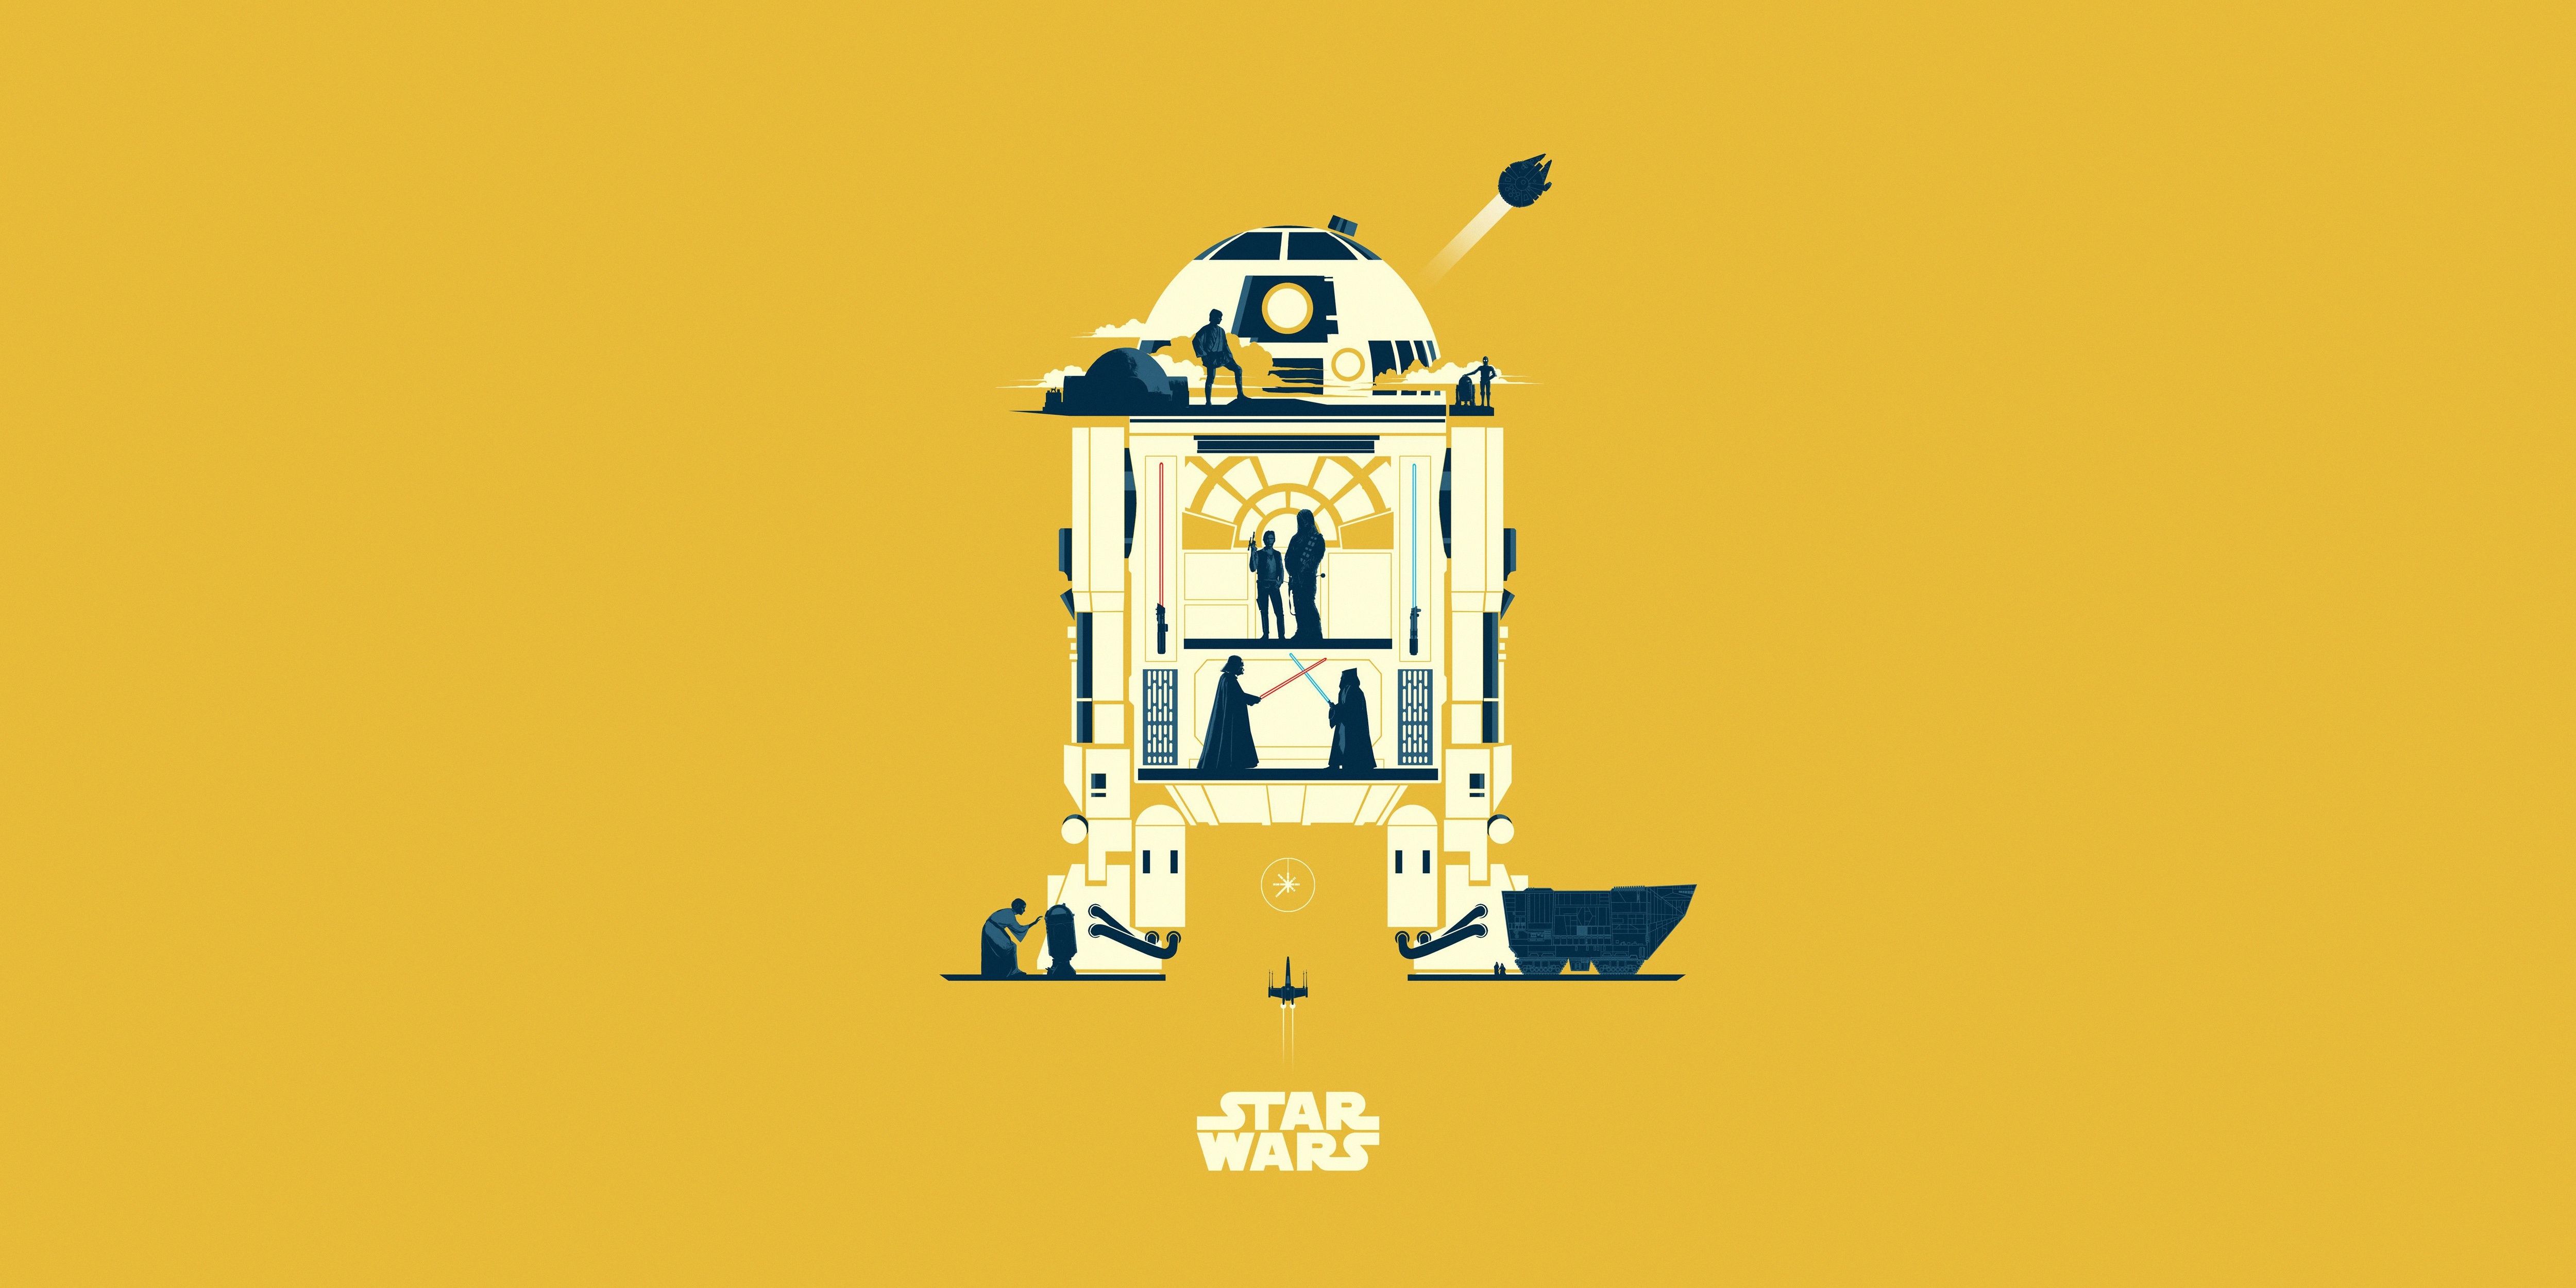 R2 D2 Star Wars Minimalist Wallpaper, HD Minimalist 4K Wallpaper, Image, Photo and Background